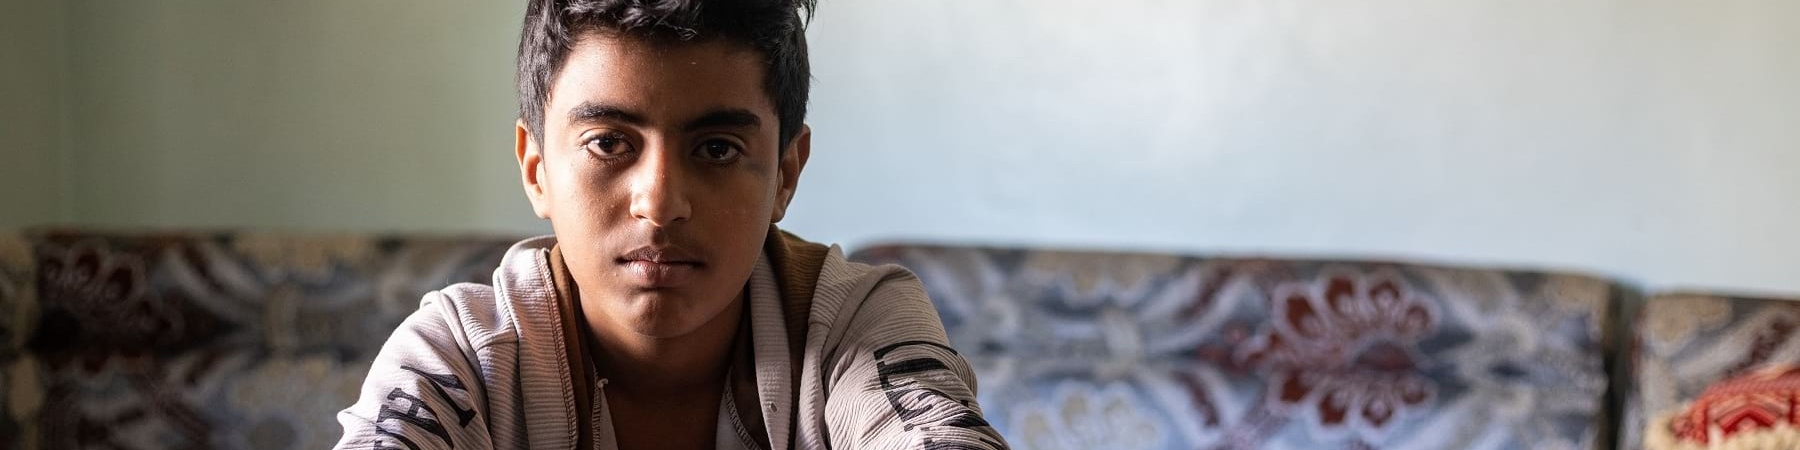 bambino yemenita seduto tiene le braccia appoggiate sulle gambe incrociate. Indossa maglietta beige e jeans